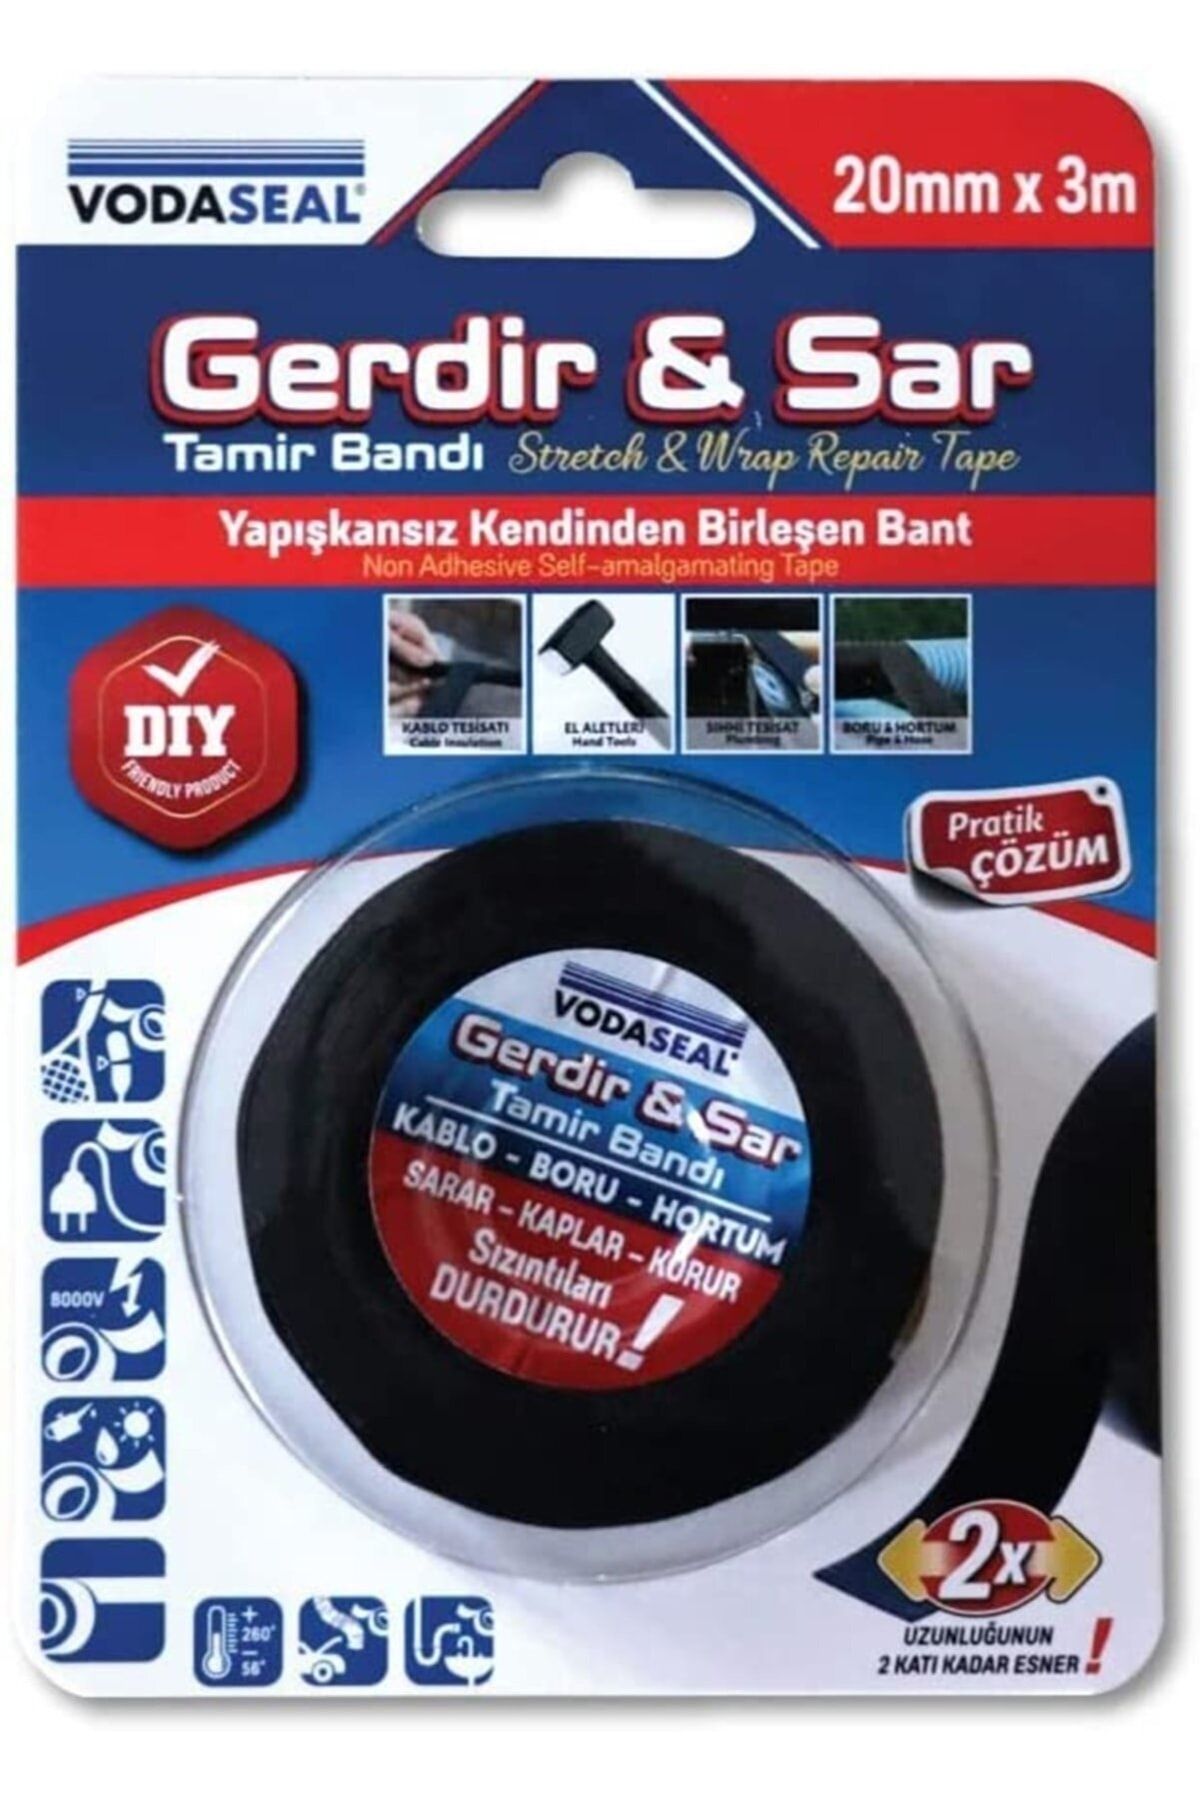 Vodaseal Gerdir Sar Tamirat Bandı 20mm X 3 Metre Yapışkansız Birleşen Bant